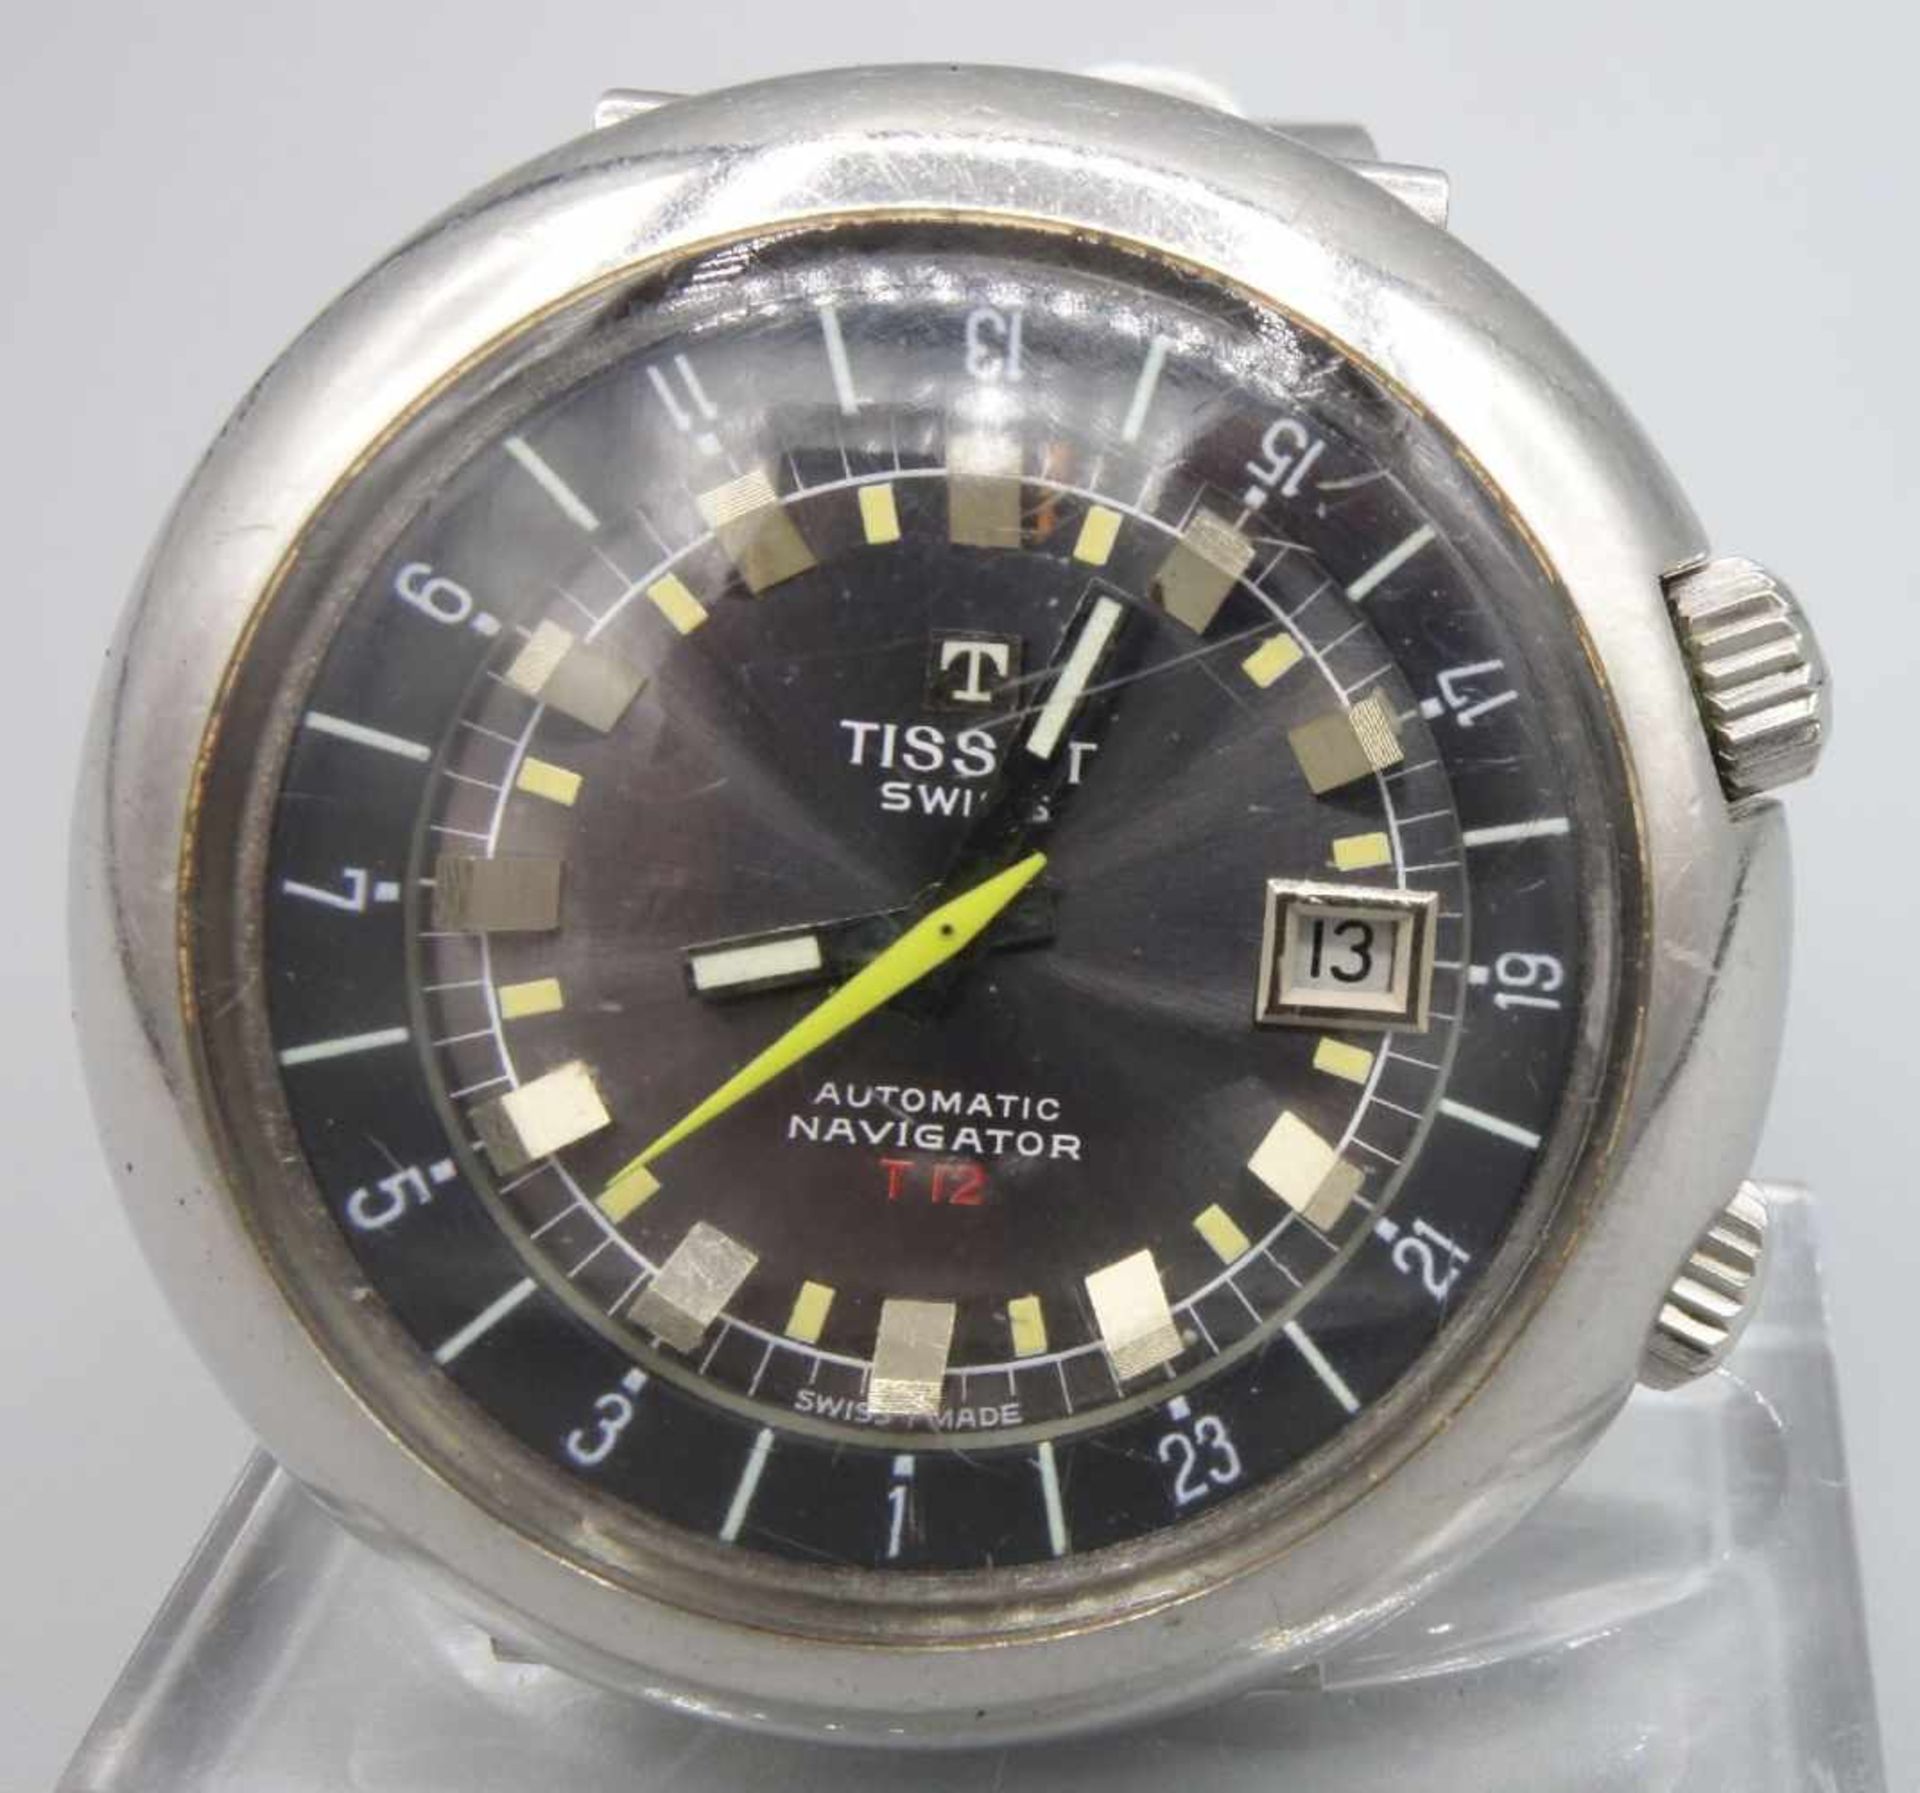 VINTAGE ARMBANDUHR: TISSOT NAVIGATOR T12 / wristwatch, 1970er Jahre, Manufaktur Tissot / Schweiz, - Image 2 of 8